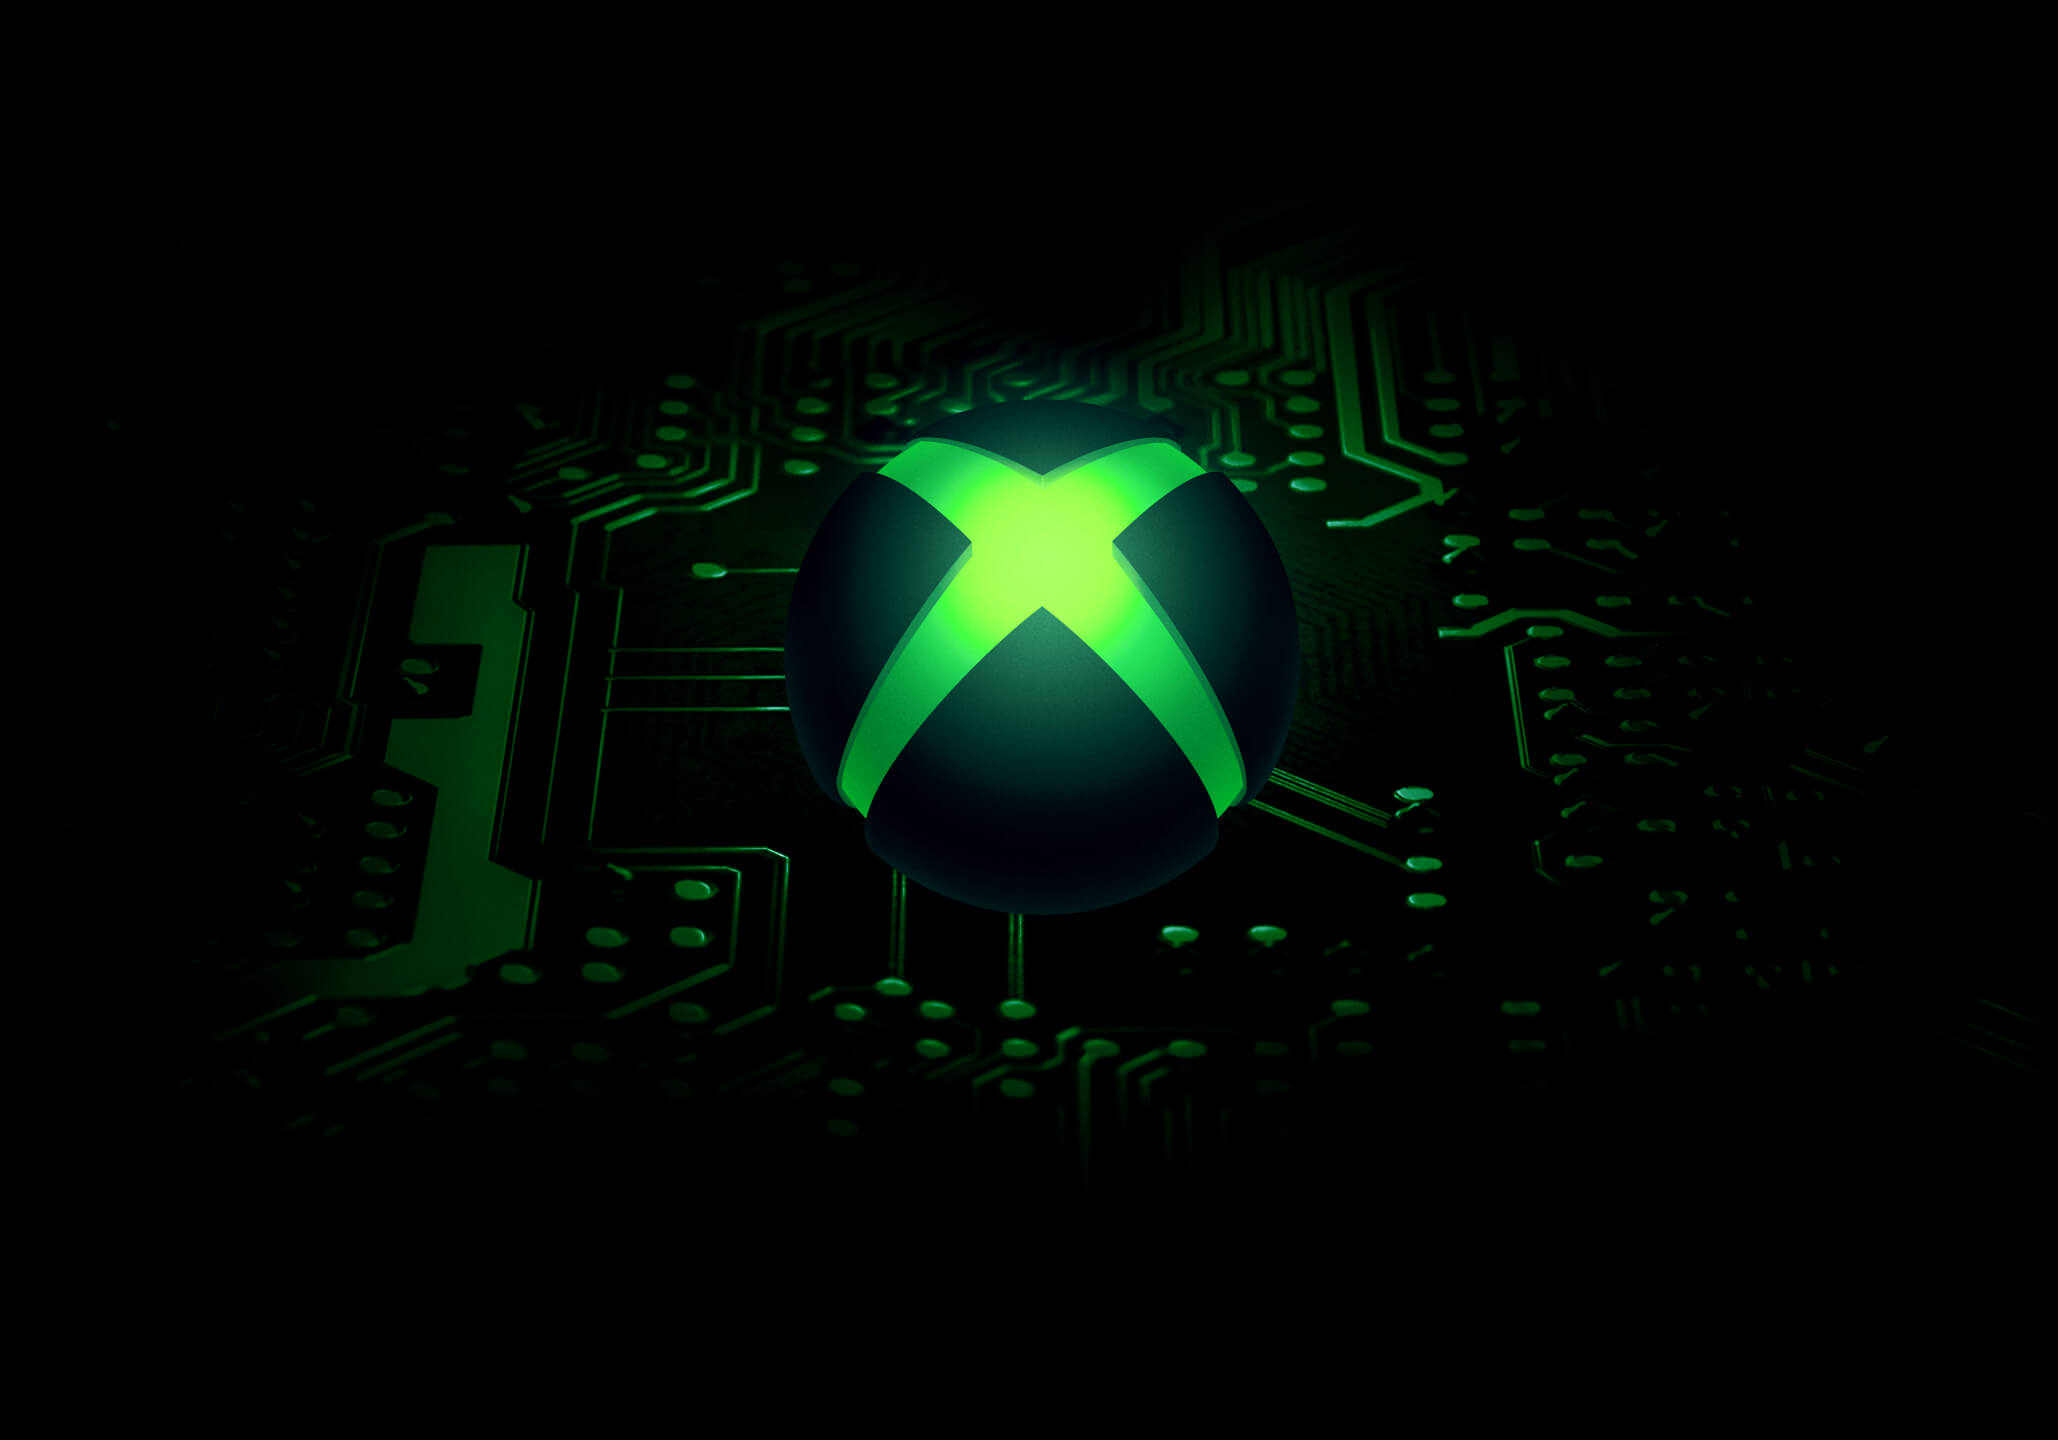 Cập nhật thông tin game demo Xbox trên eXputer.com vào ngày 9 tháng 6 là tin tức cực kỳ hấp dẫn cho những ai đam mê game Xbox. Trang web sẽ cập nhật những tin tức mới nhất về các game demo, đảm bảo bạn luôn có những thông tin cập nhật và trải nghiệm game tốt nhất.